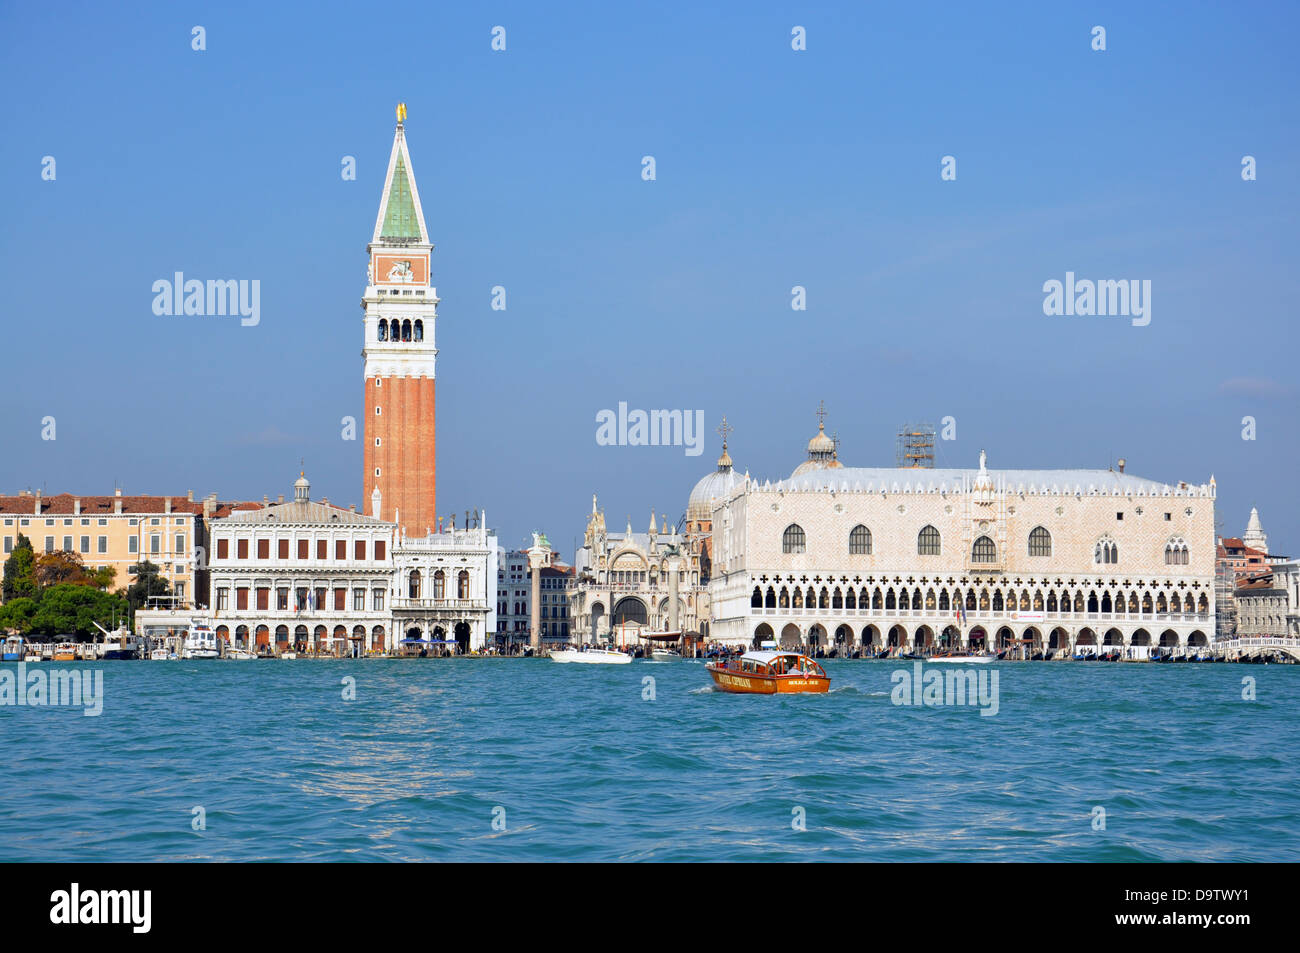 Le Campanile et du palais des Doges de la voir, à Venise, Italie Banque D'Images